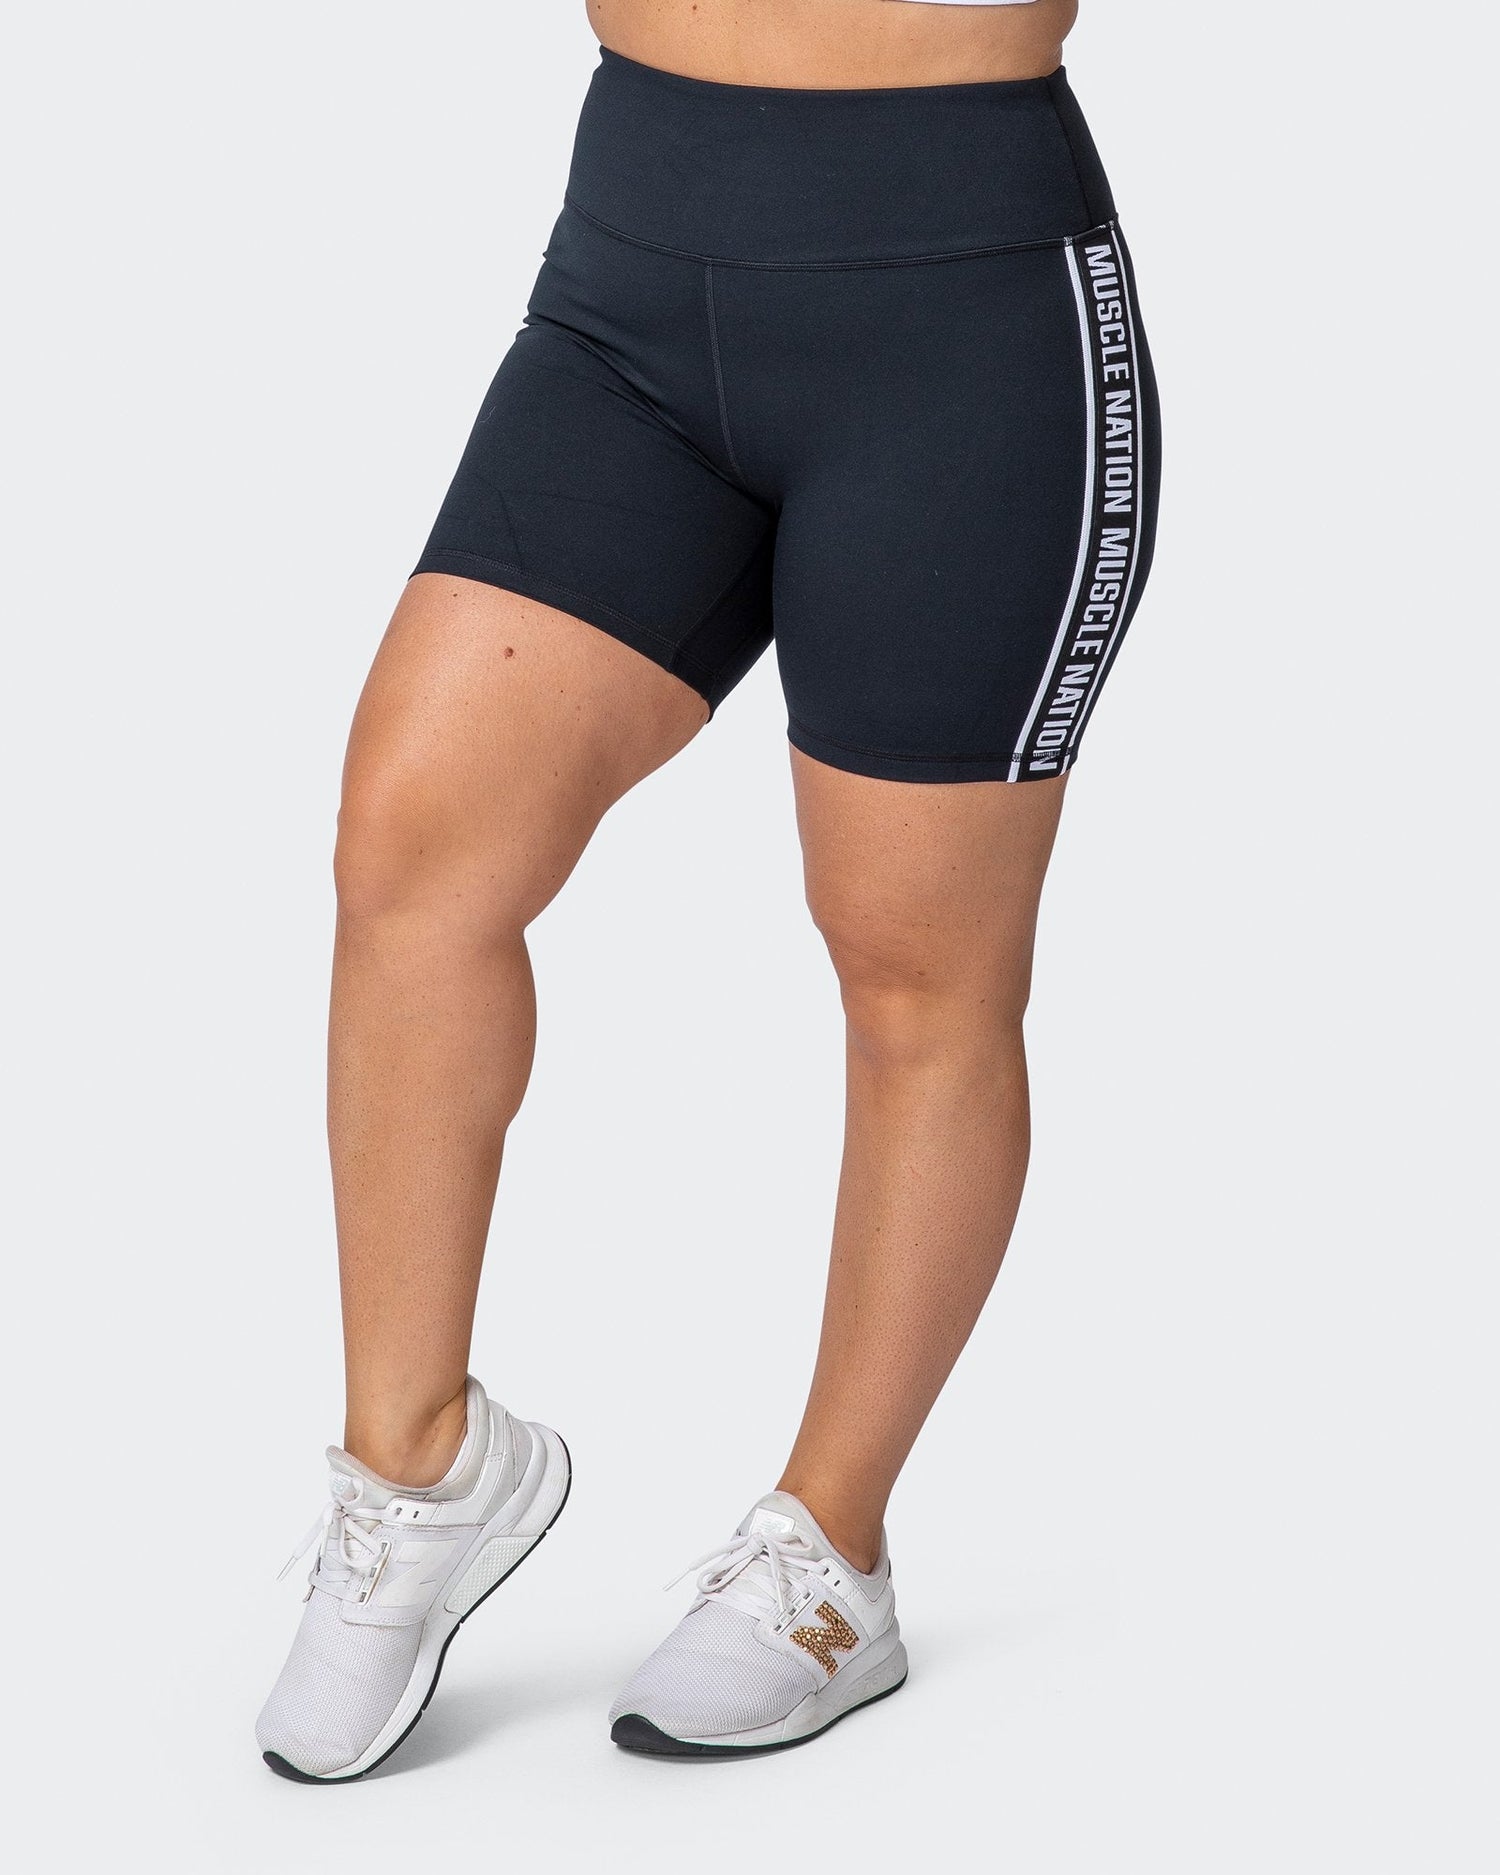 Dynamic Bike Shorts - Black